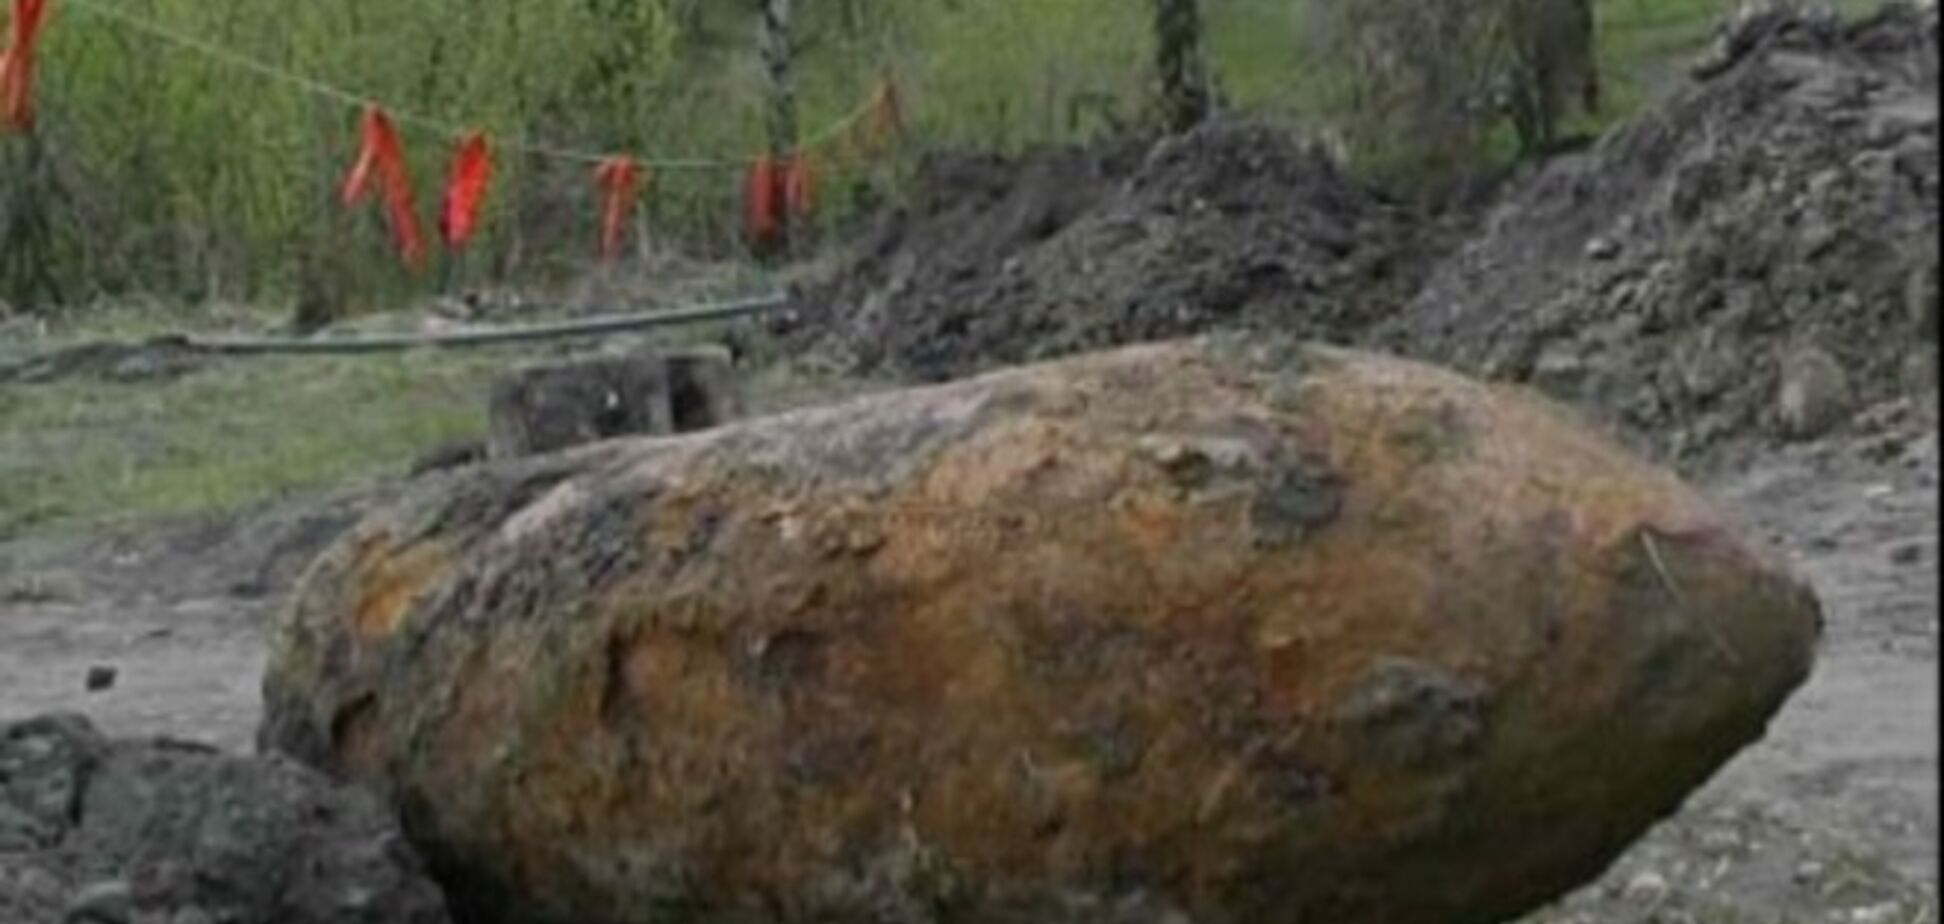 На Харьковщине вблизи жилых домов нашли авиабомбу весом 250 кг